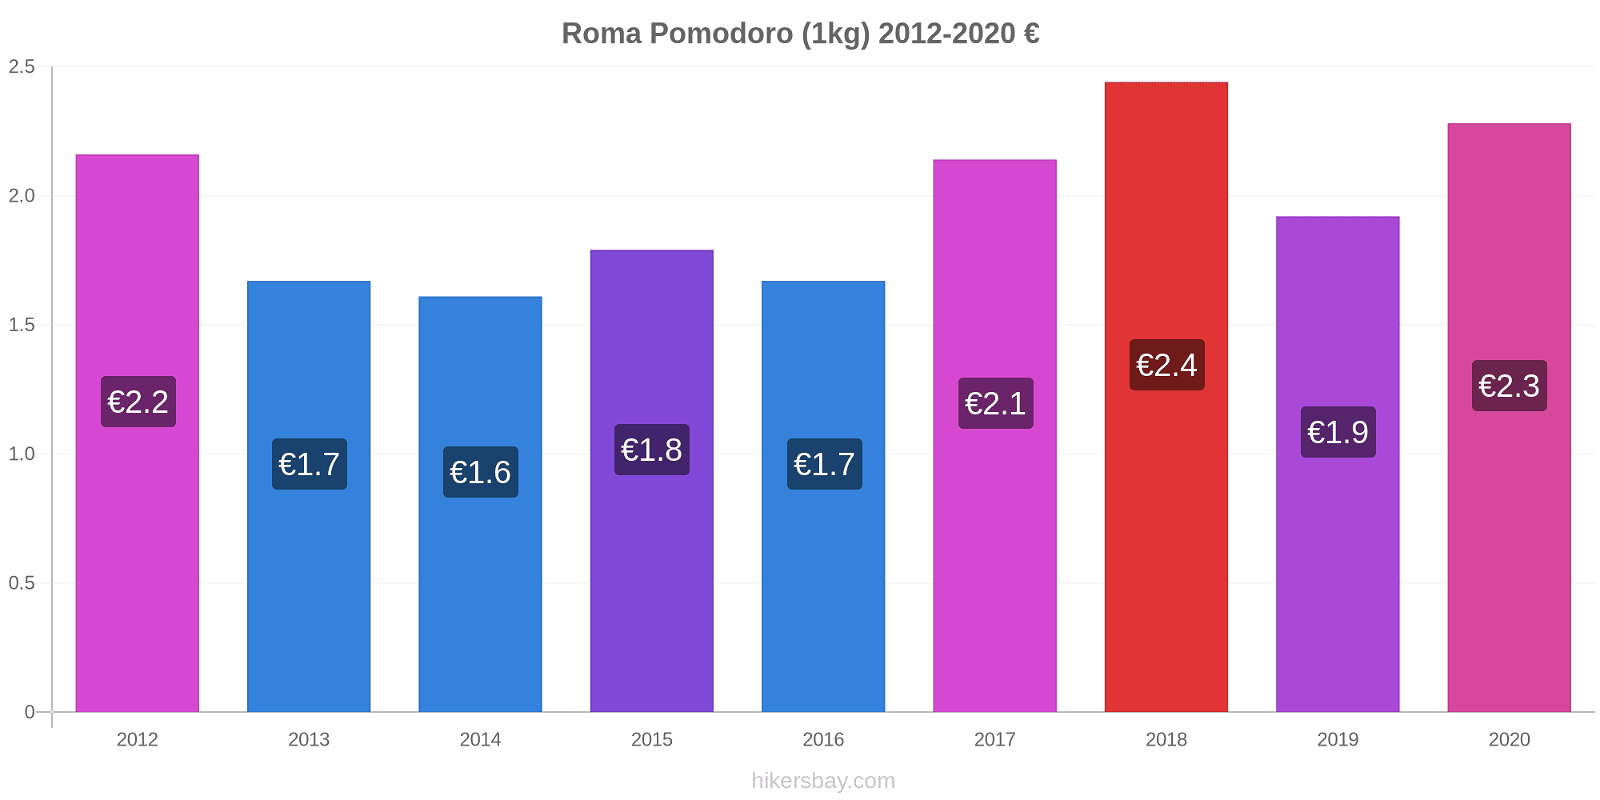 Roma variazioni di prezzo Pomodoro (1kg) hikersbay.com